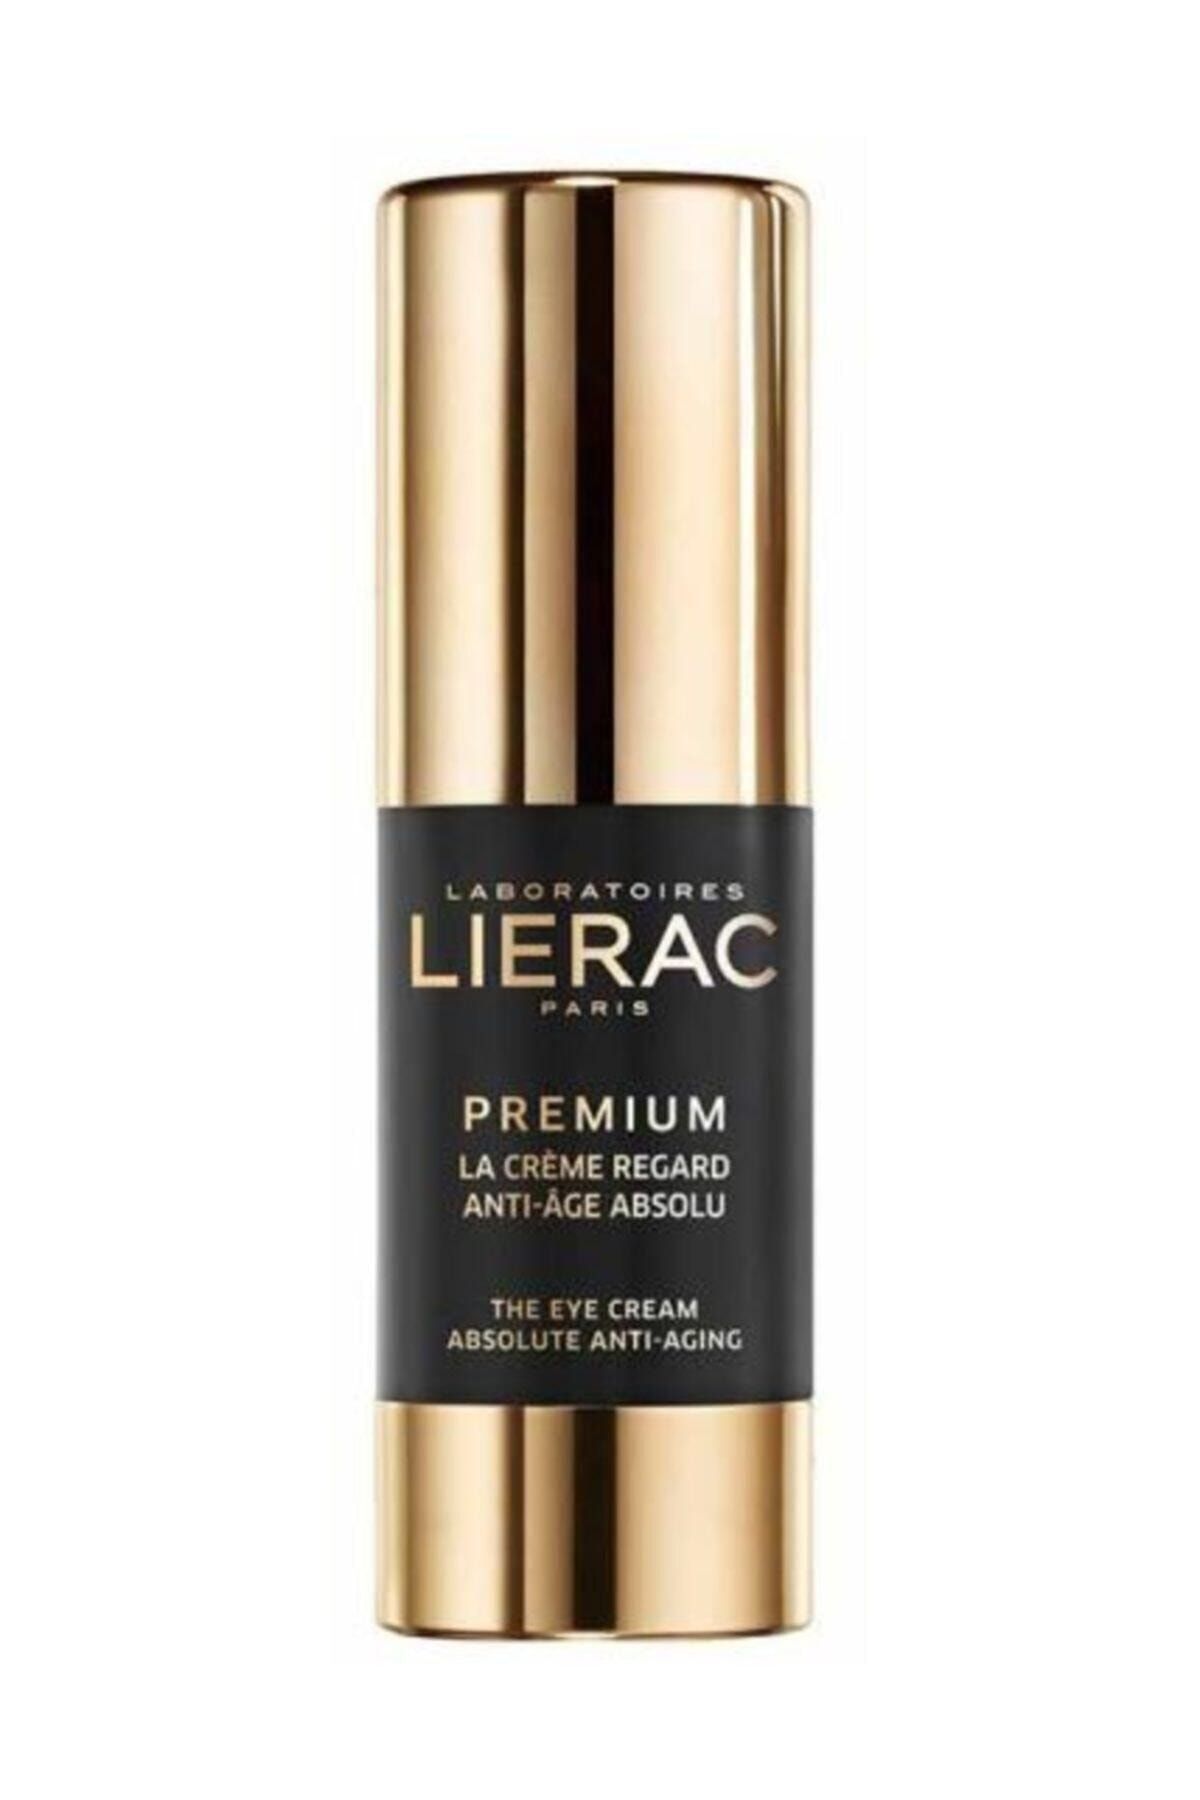 Lierac Premium - Tüm Yaşlanma Belirtilerine Karşı Etkili Aydınlatıcı Göz Çevresi Kremi 15 Ml